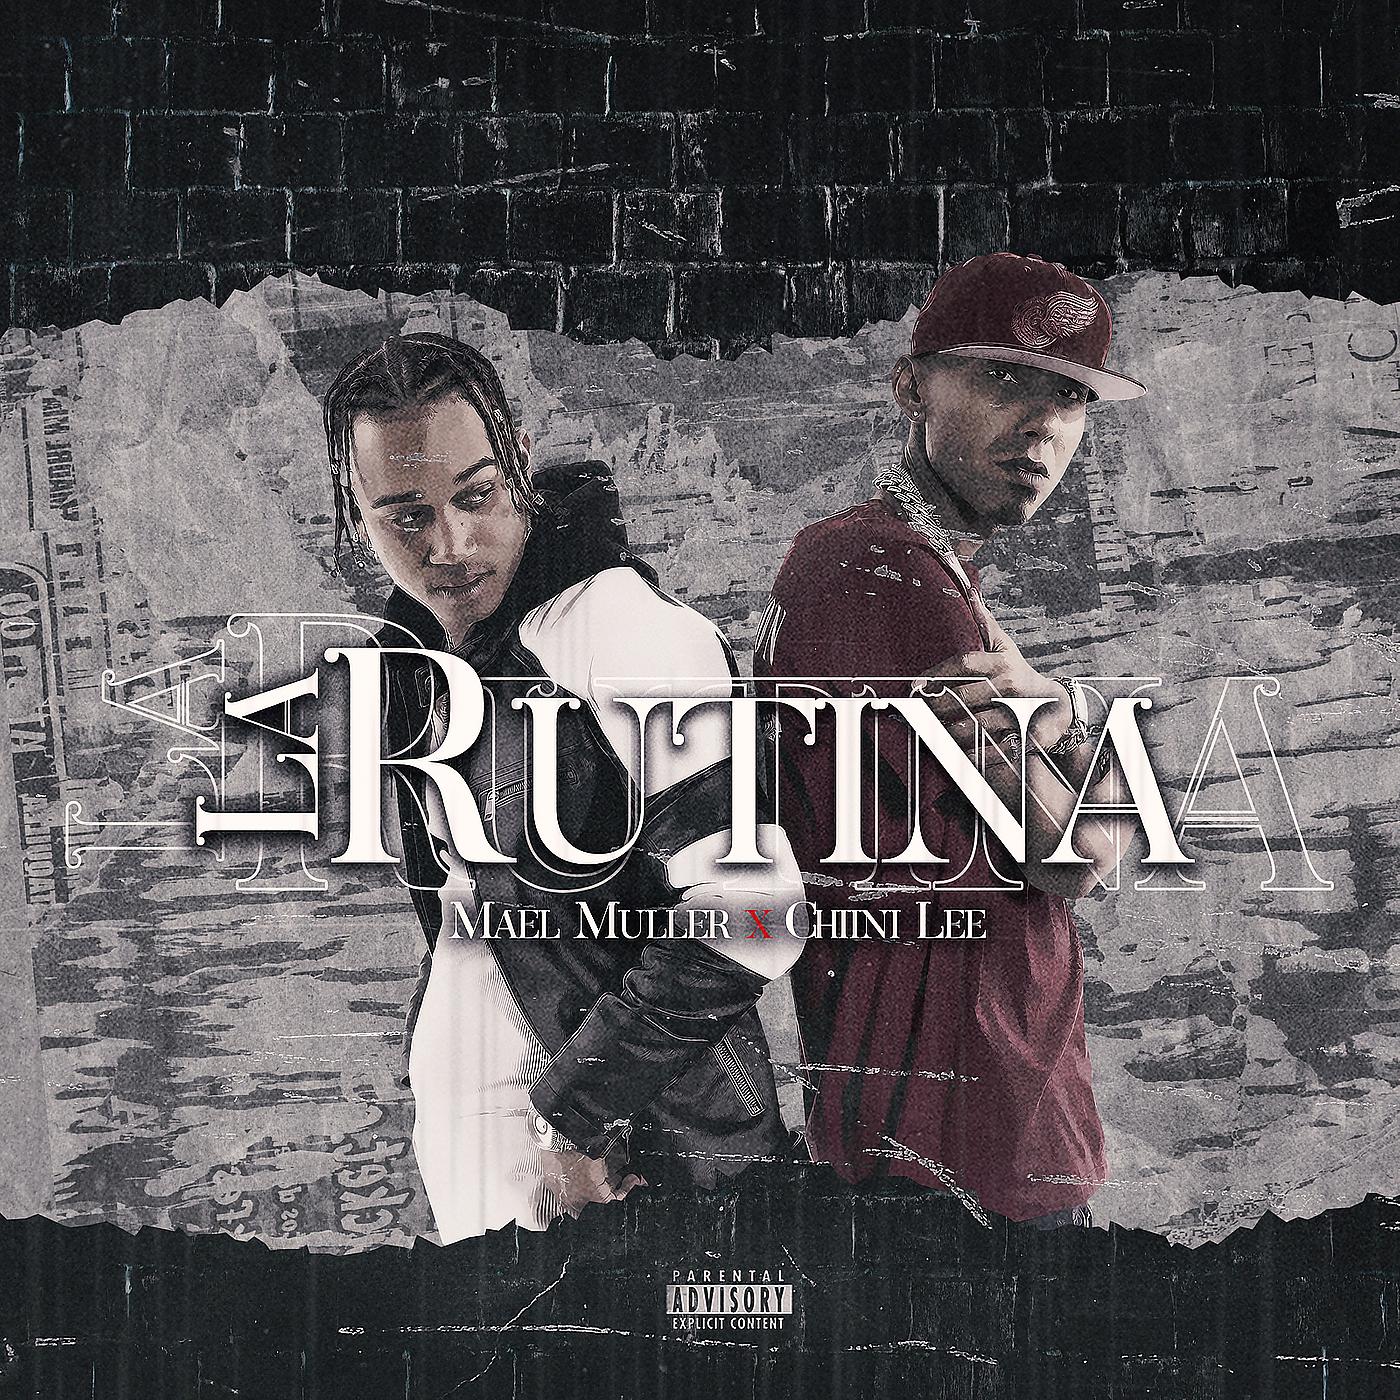 Постер альбома La Rutina